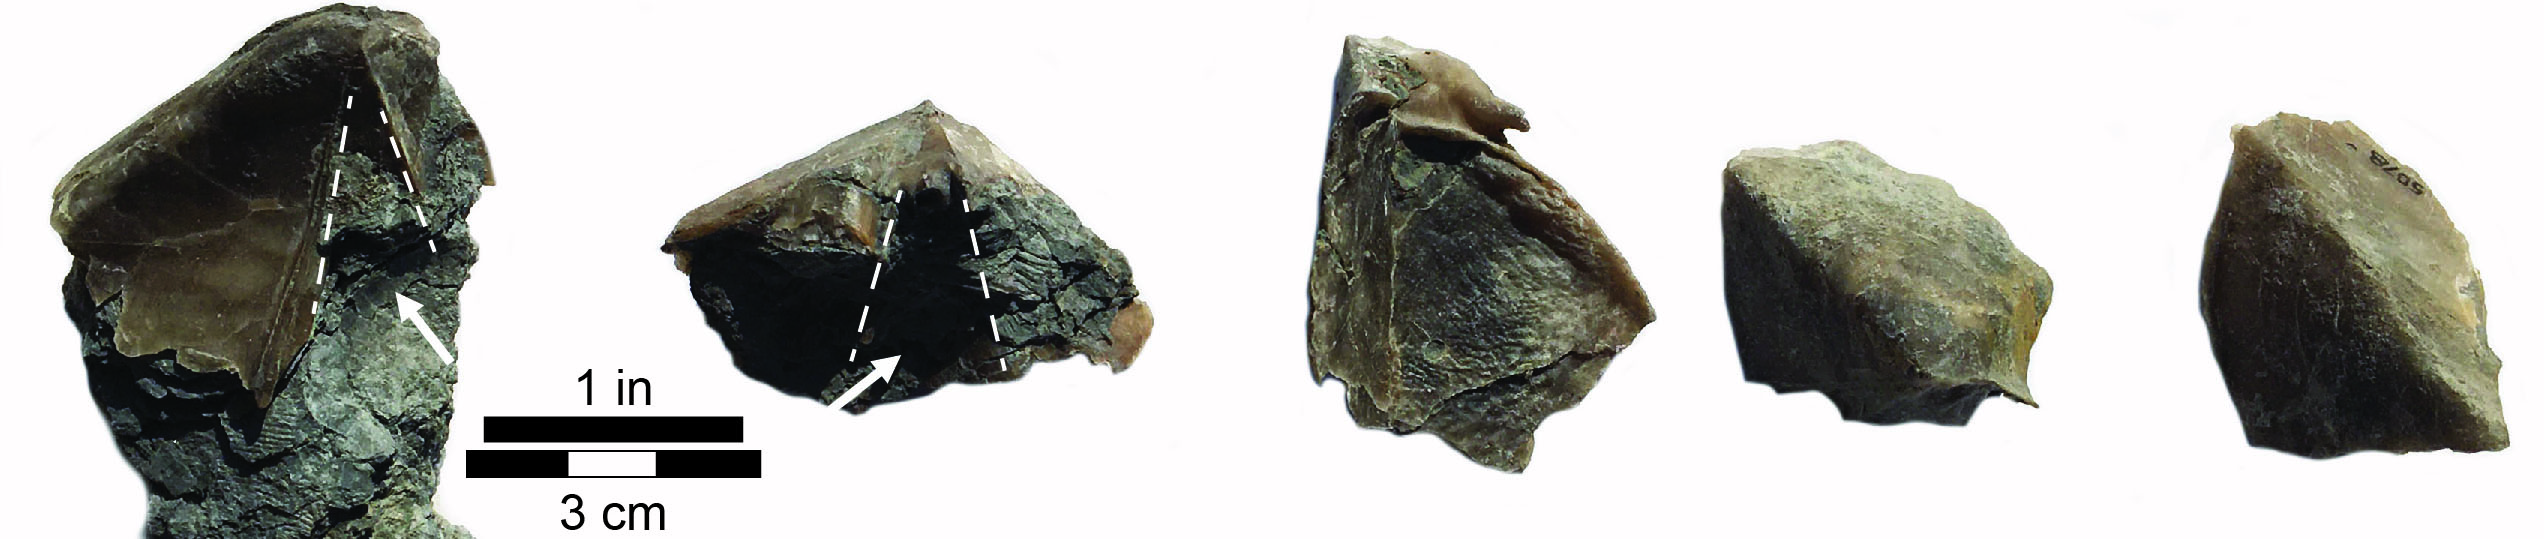 Syringothyris Fragments